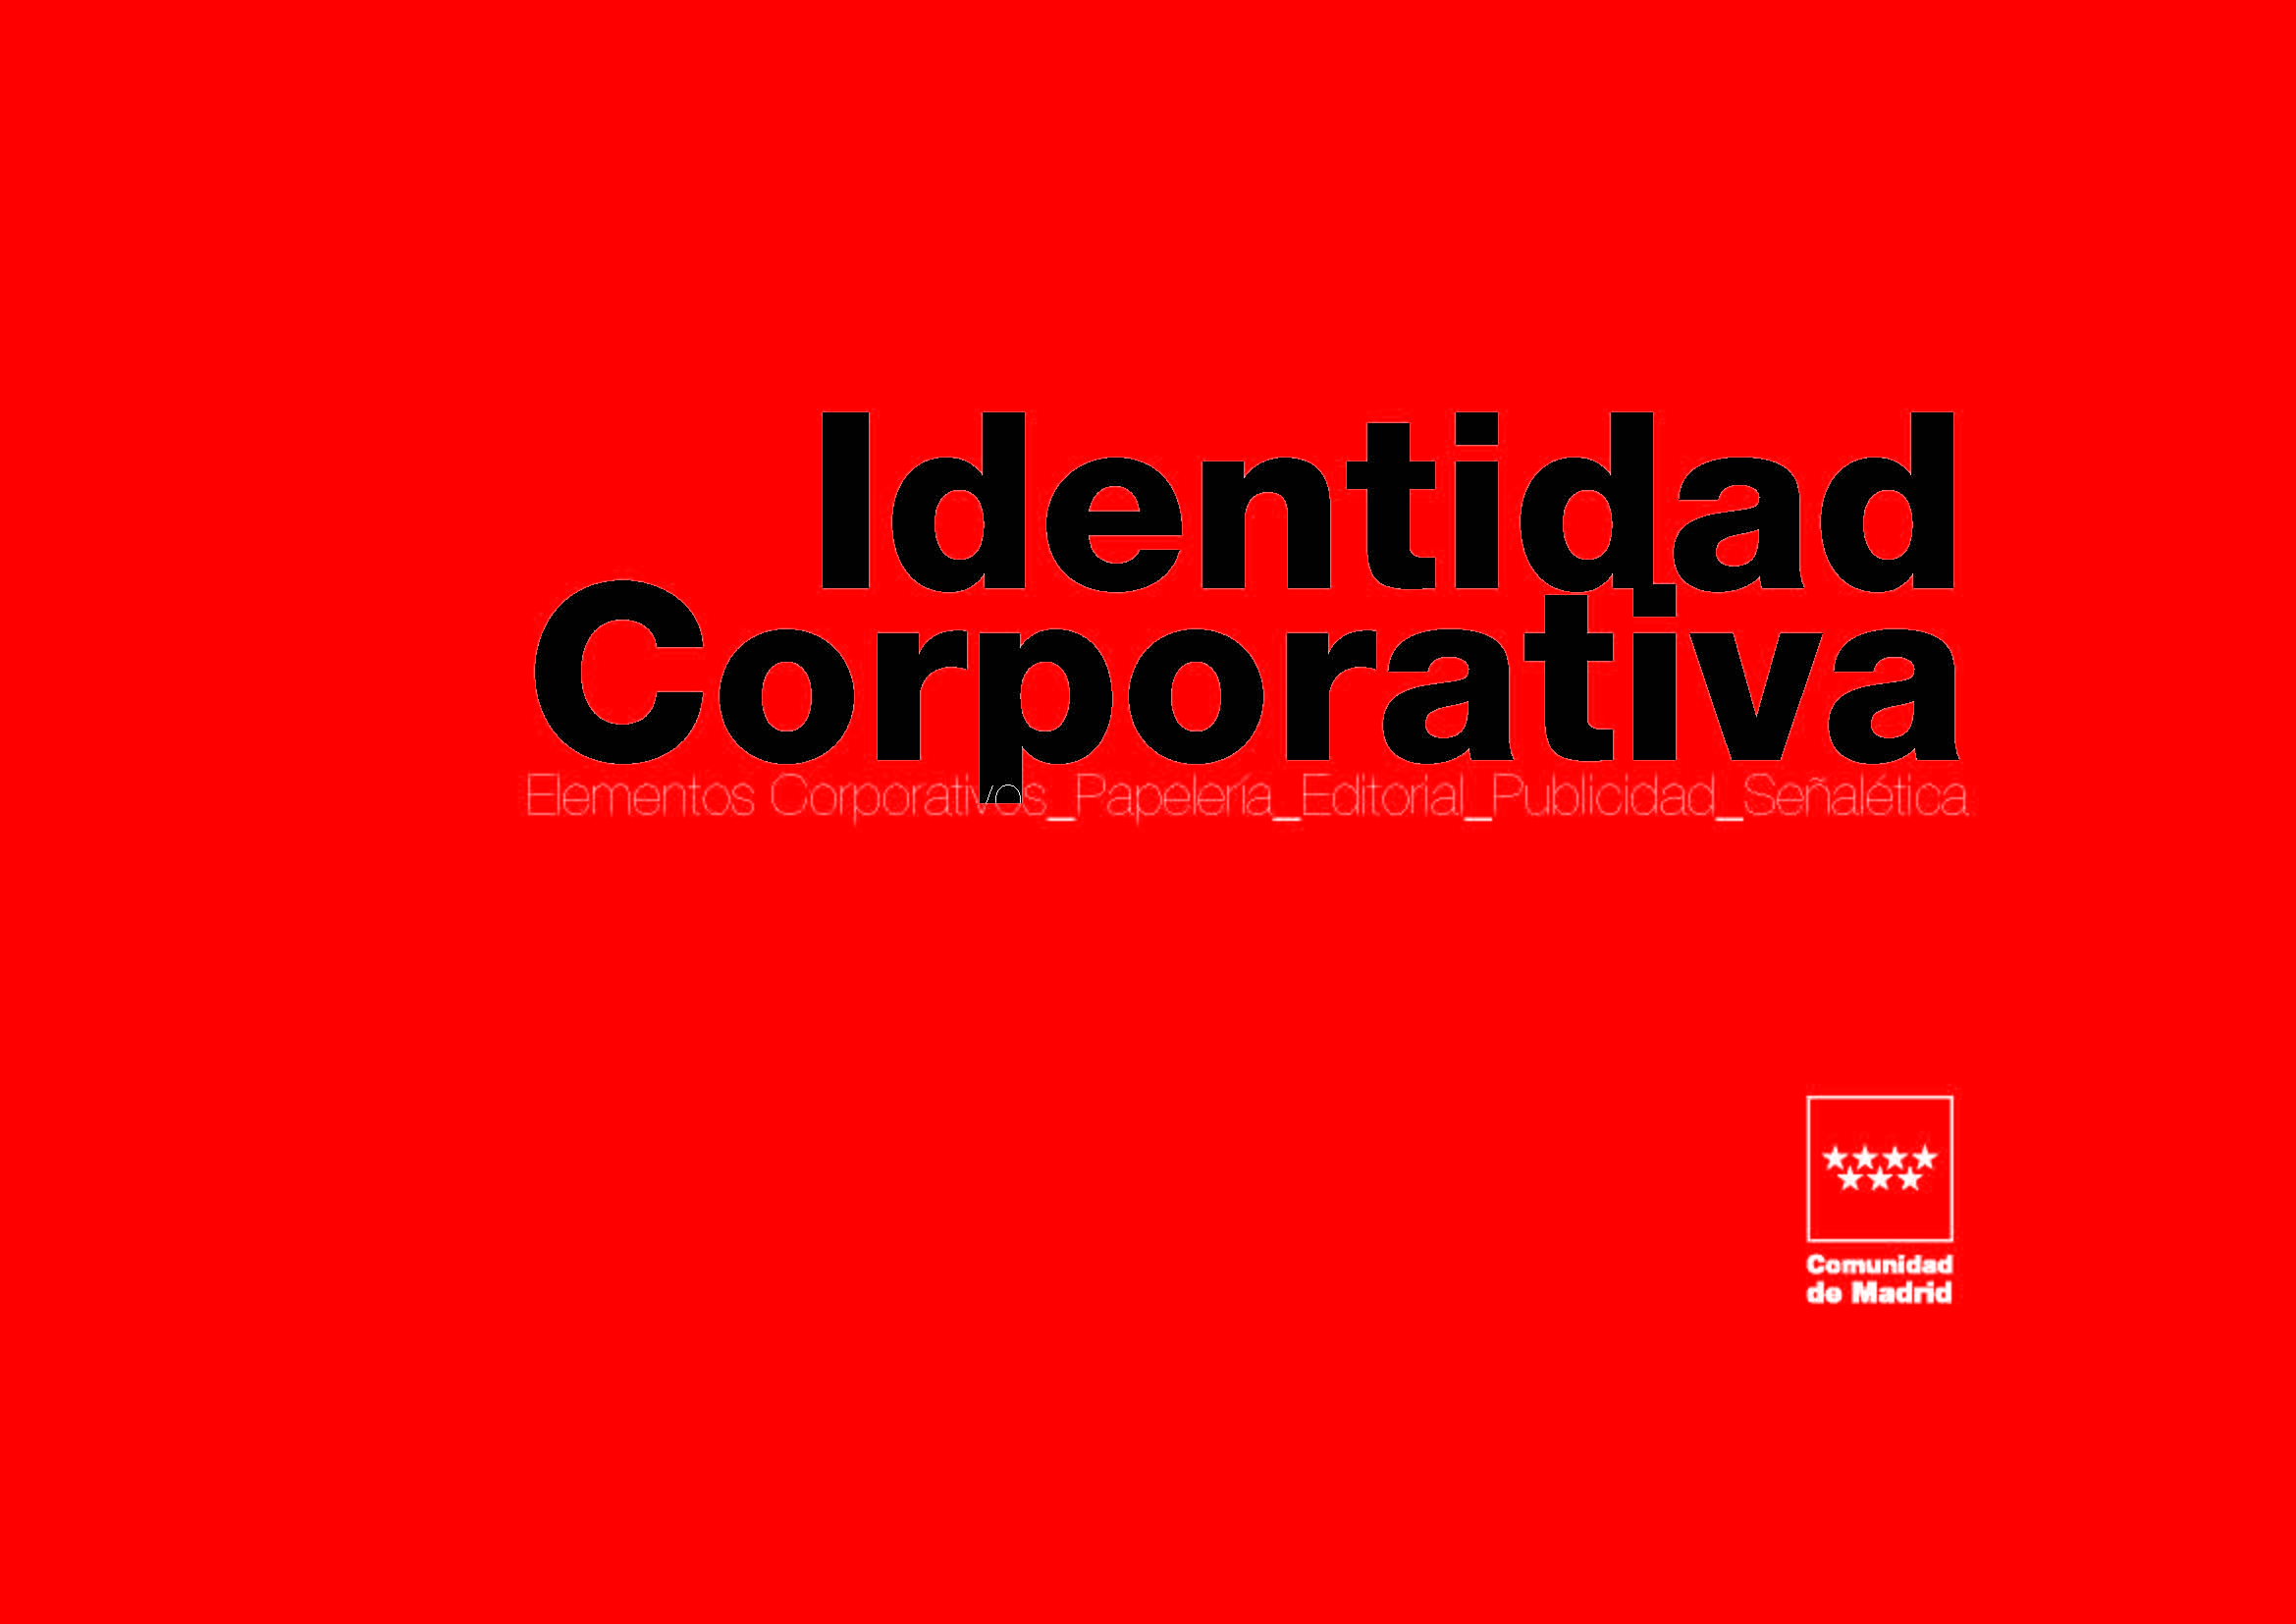 Portada de Manual de Identidad Corporativa. Elementos corporativos, papelería, editorial, publicidad, señalética